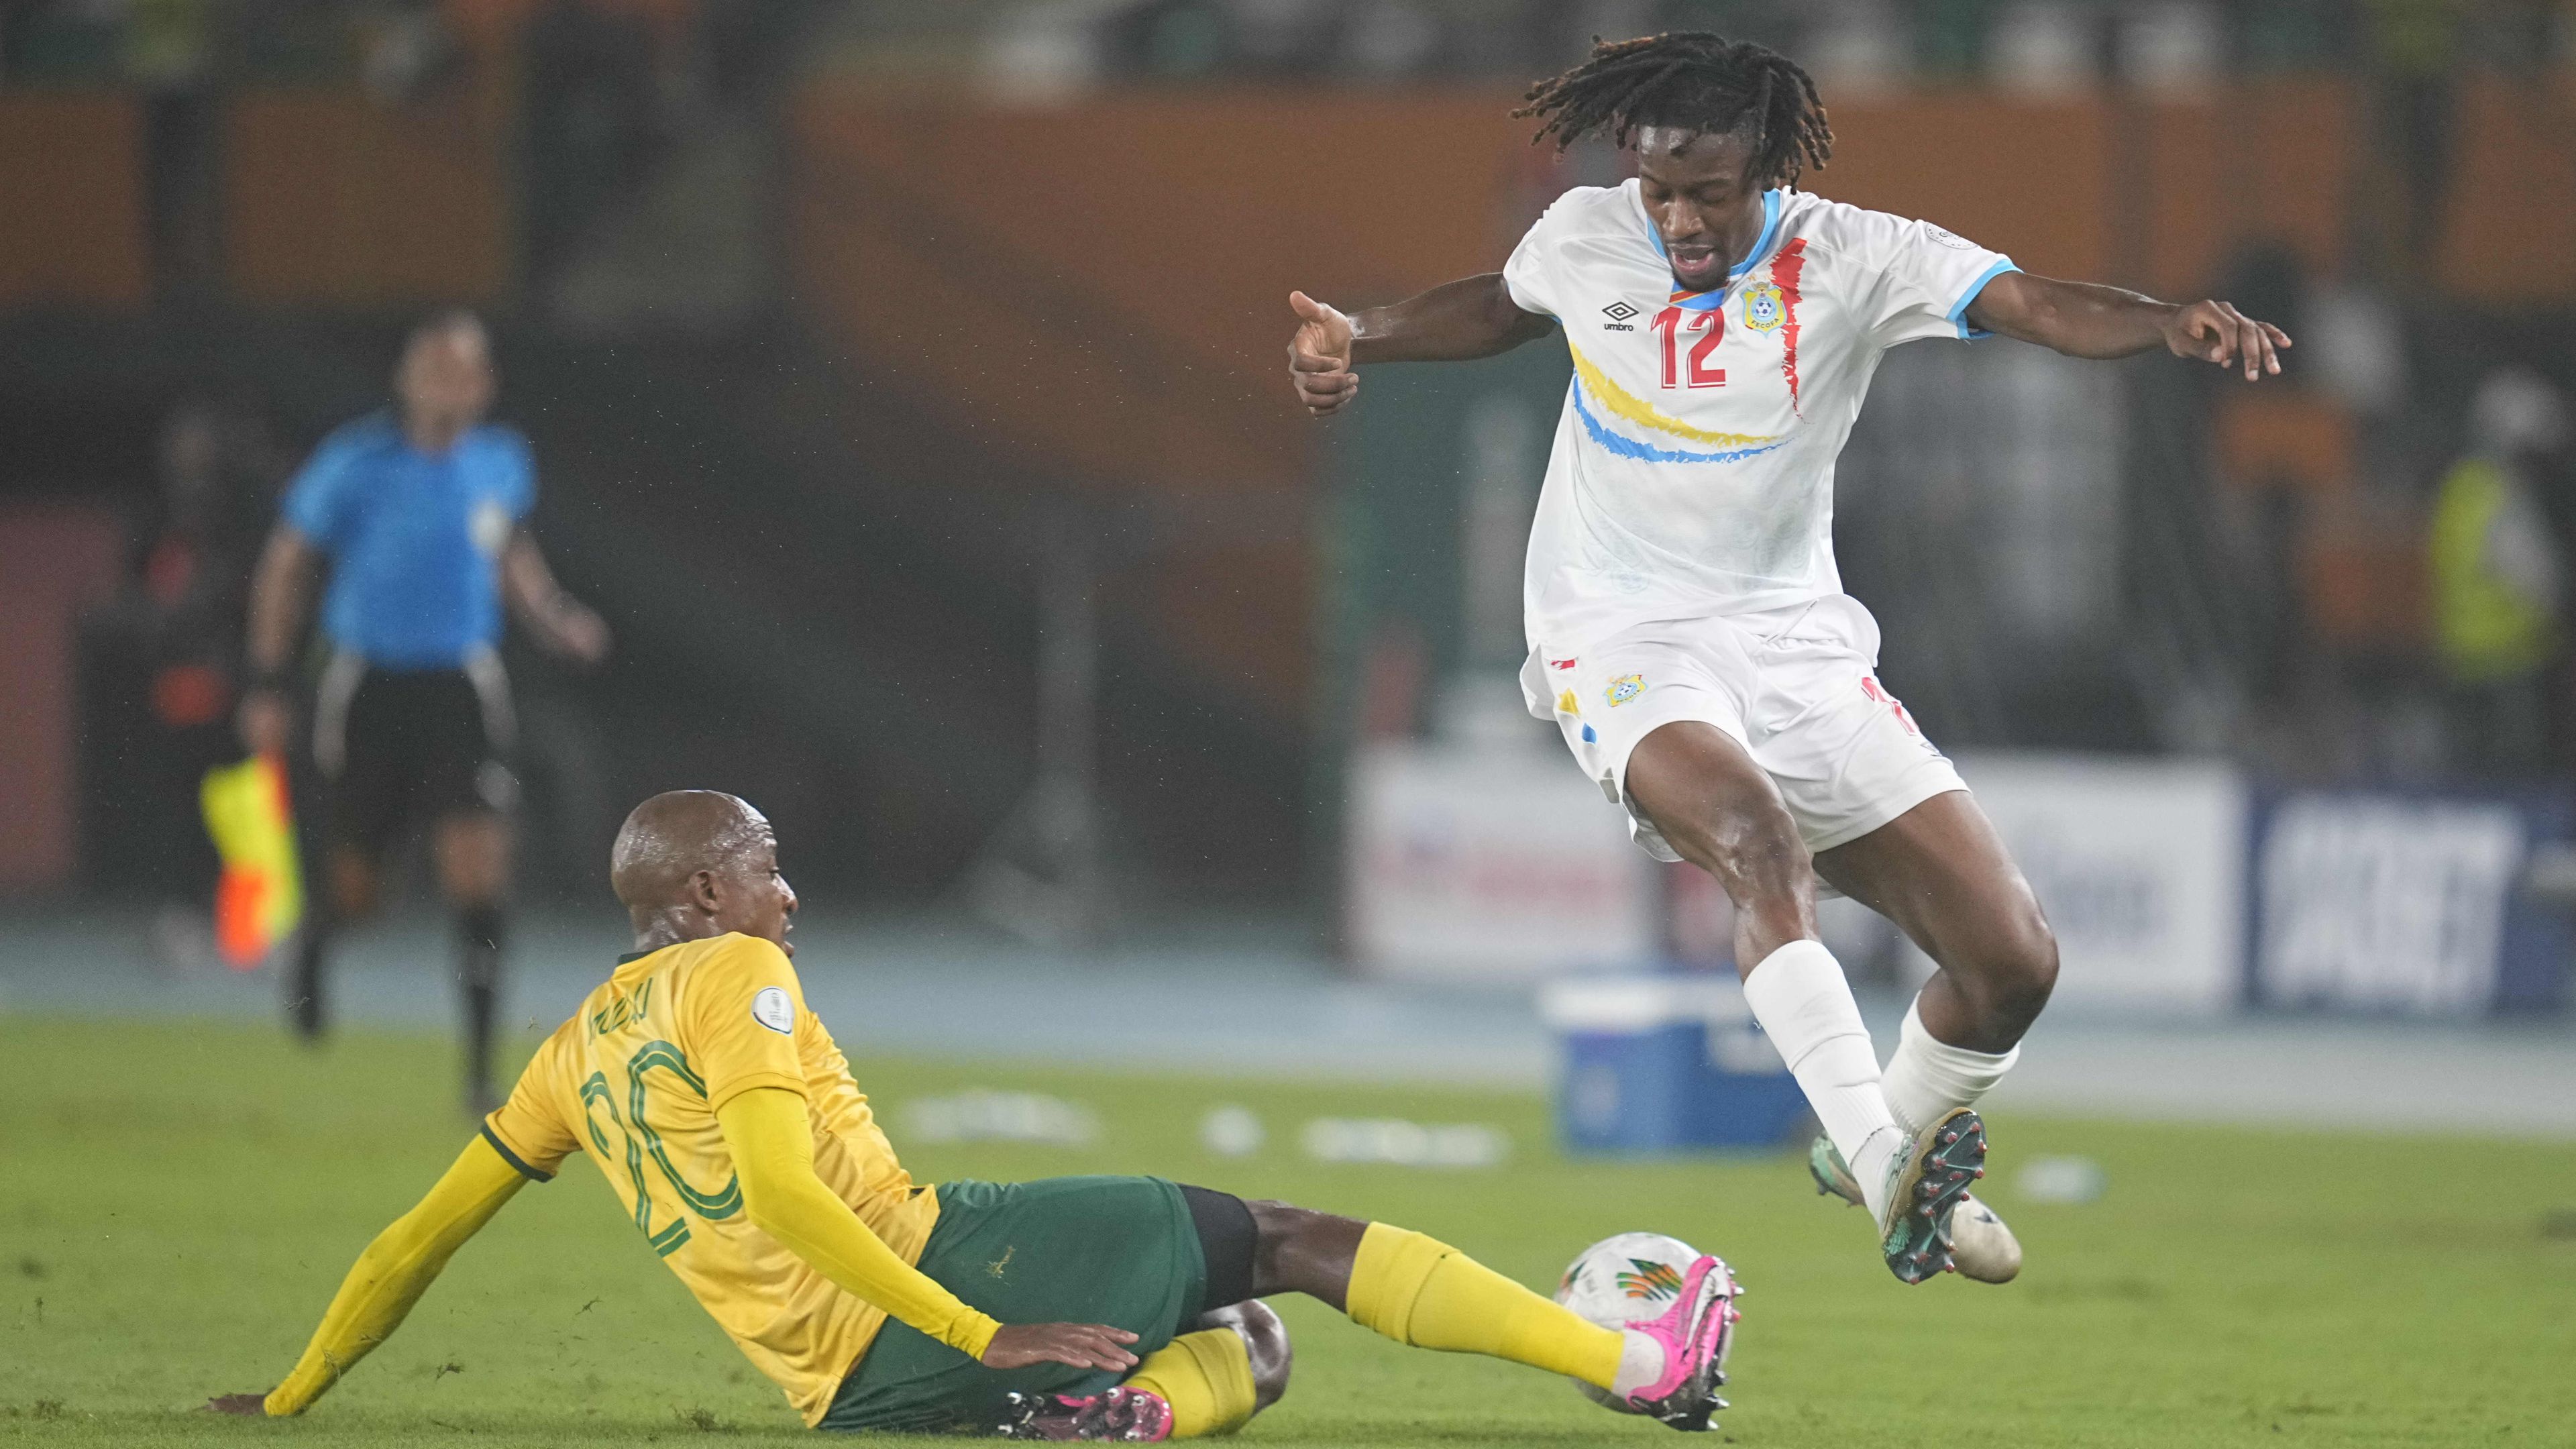 Dél-Afrika és Kongó csatája a szétlövésben dőlt el, végül előbbi válogatott szerezte meg a harmadik helyet